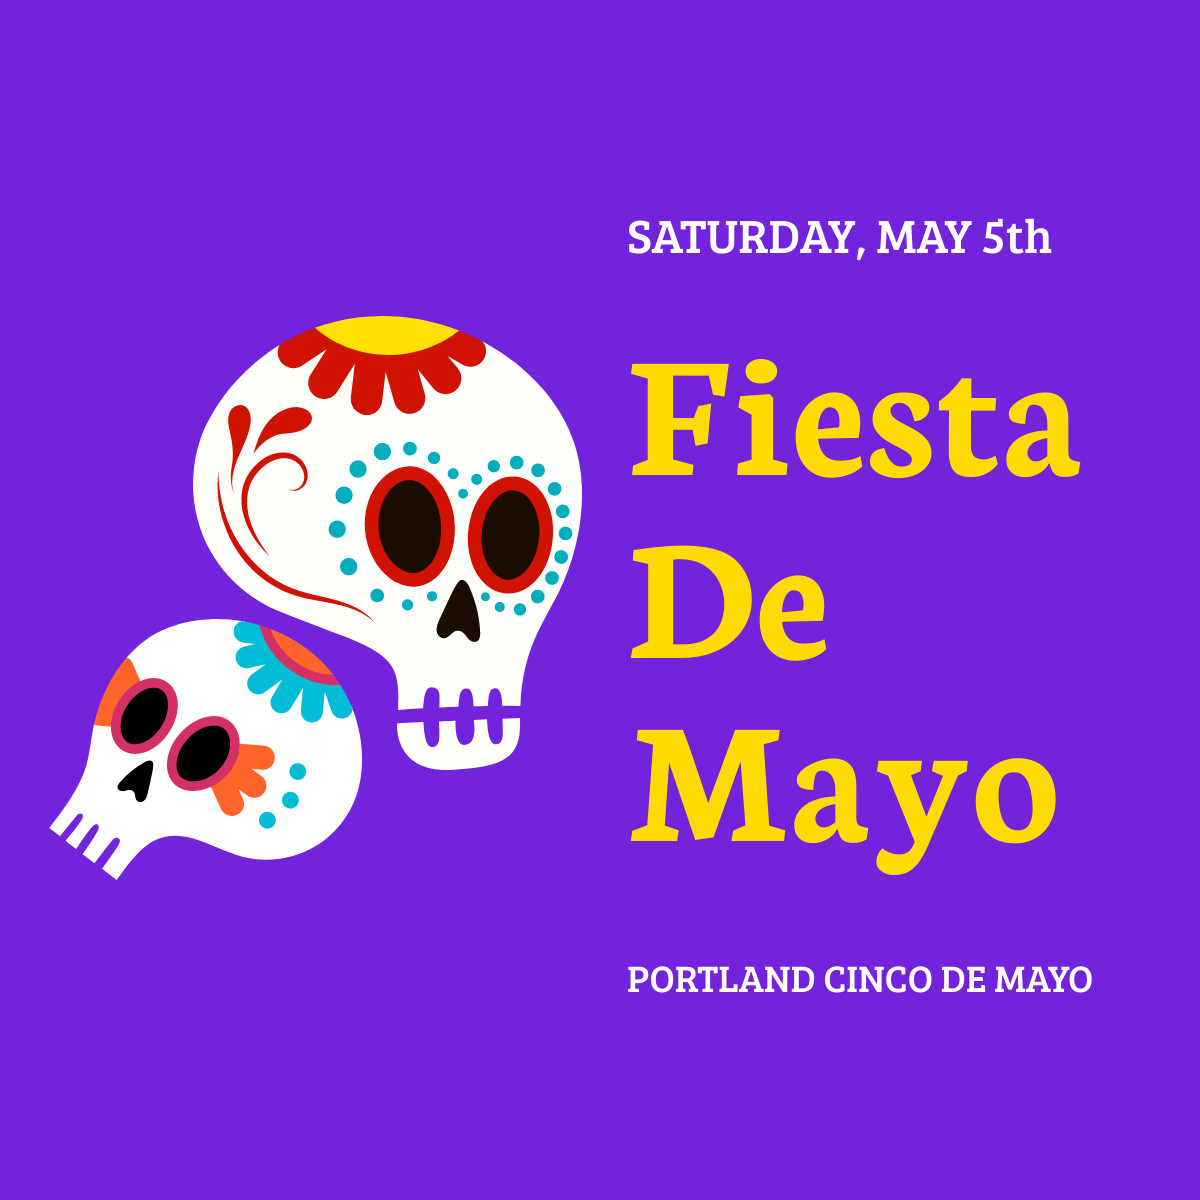 Portland Cinco de Mayo Festival Responsive Square Art 1200x1200